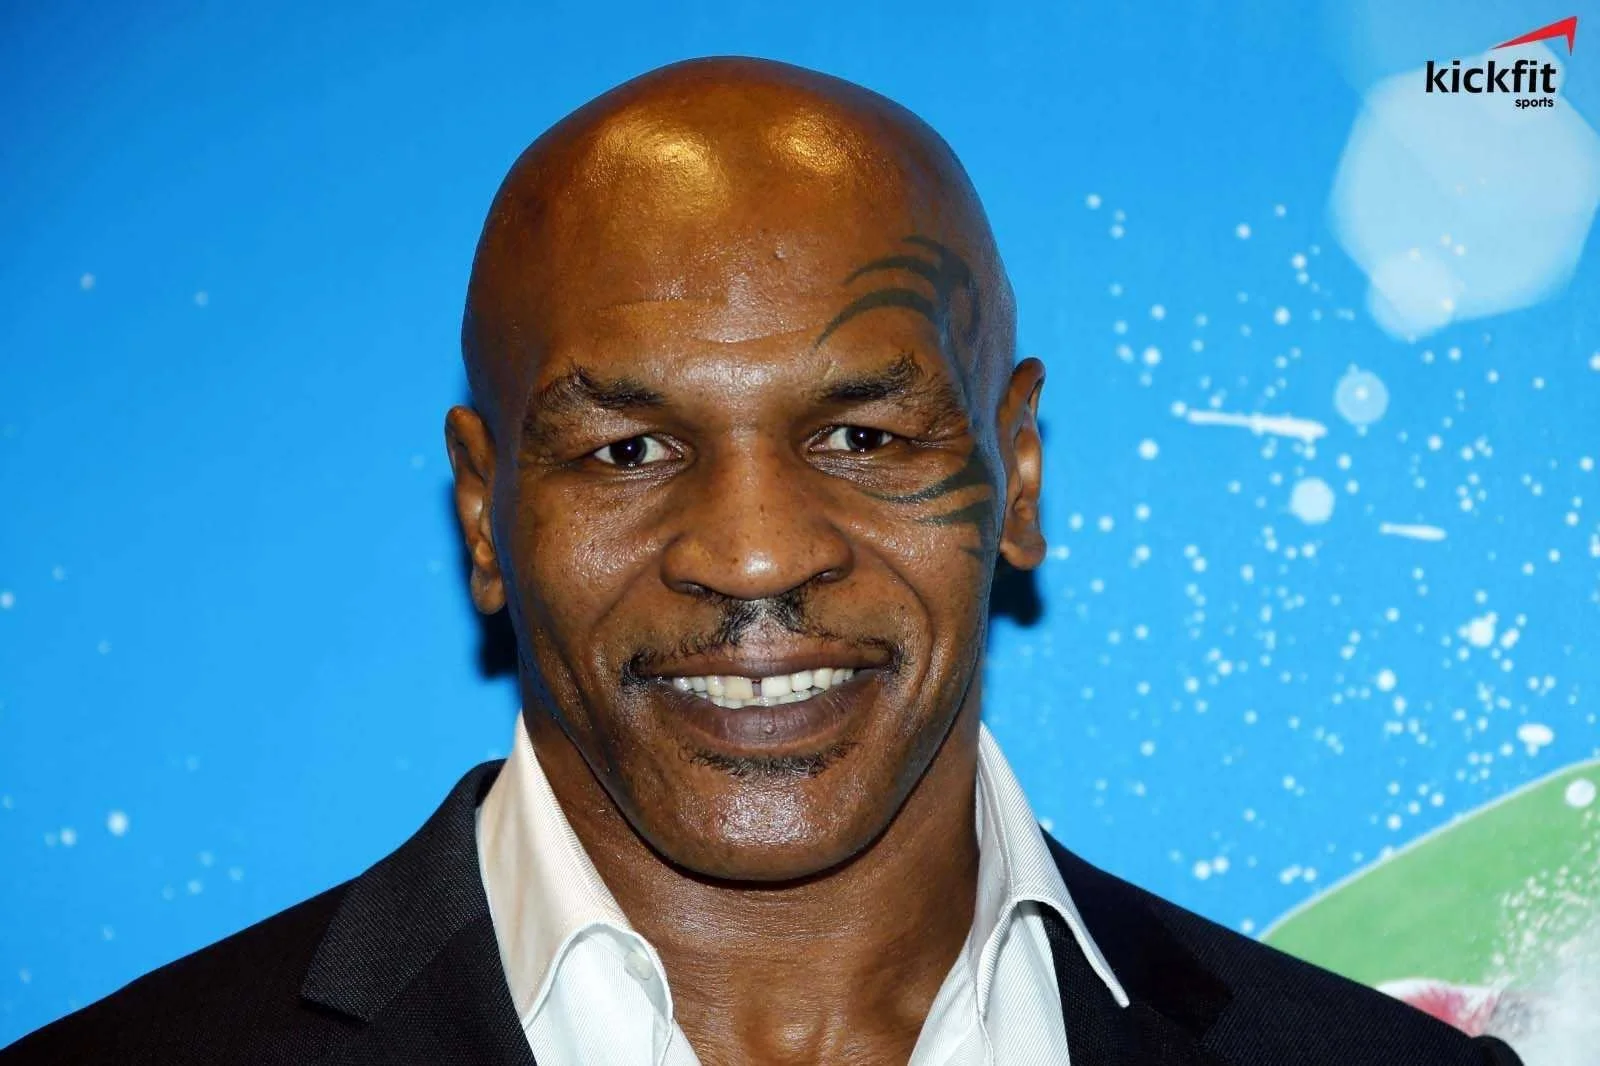 Cựu vô địch Mike Tyson khẳng định: ‘Tôi không muốn bất cứ ai thương hại’